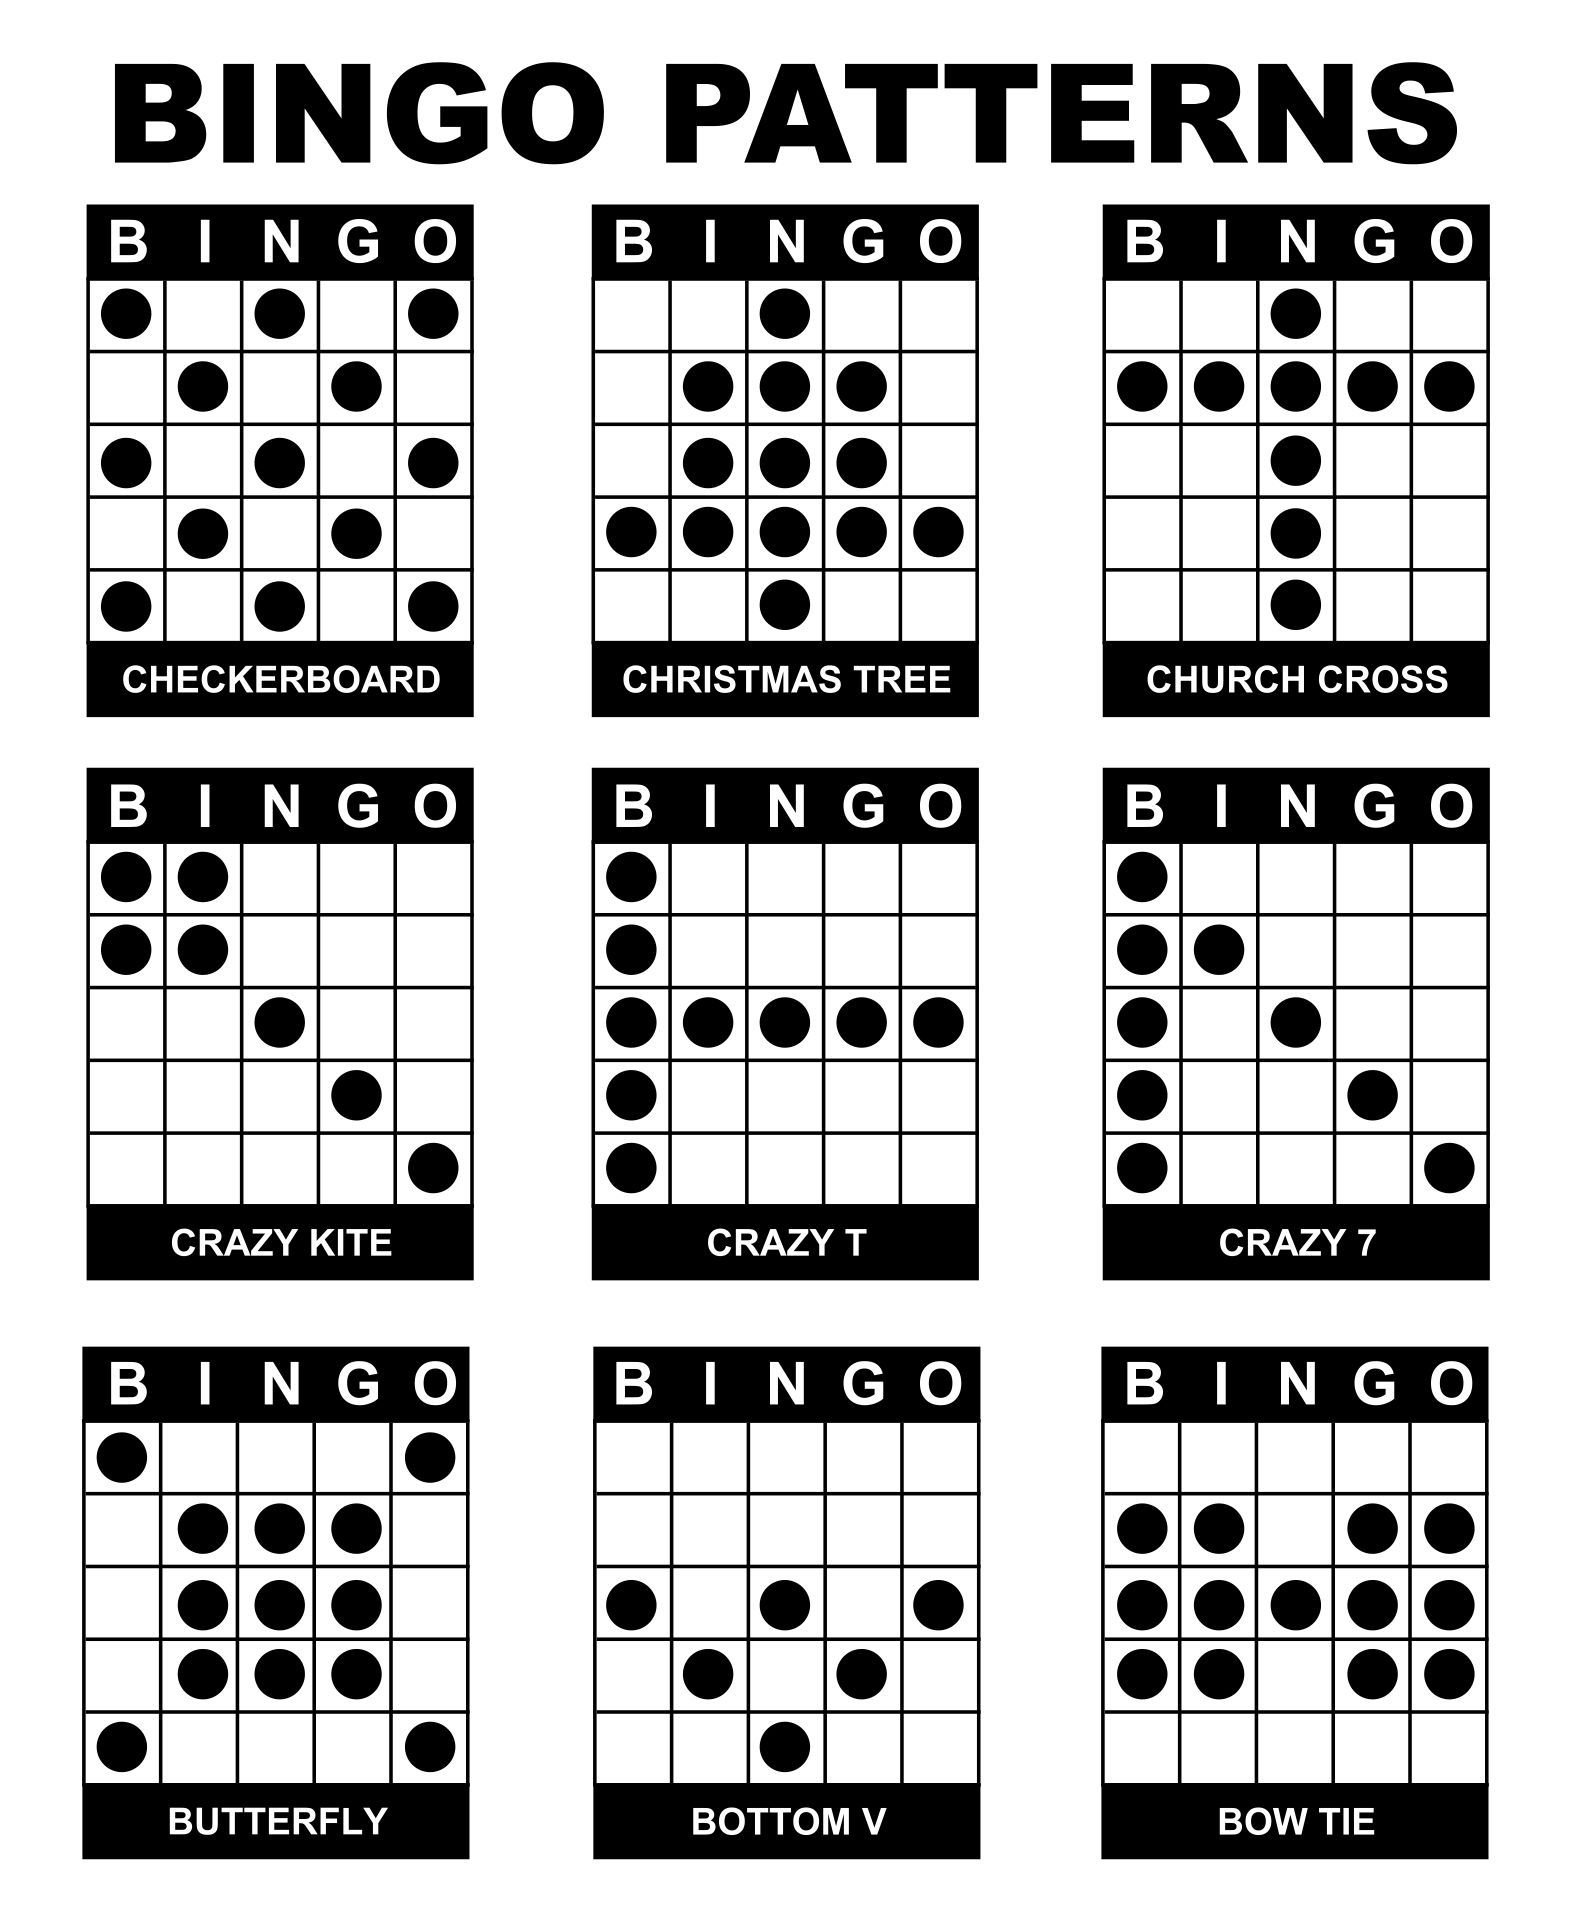 Bingo Game Patterns - 12 Free Pdf Printables | Printablee - Free Printable Bingo Game Patterns